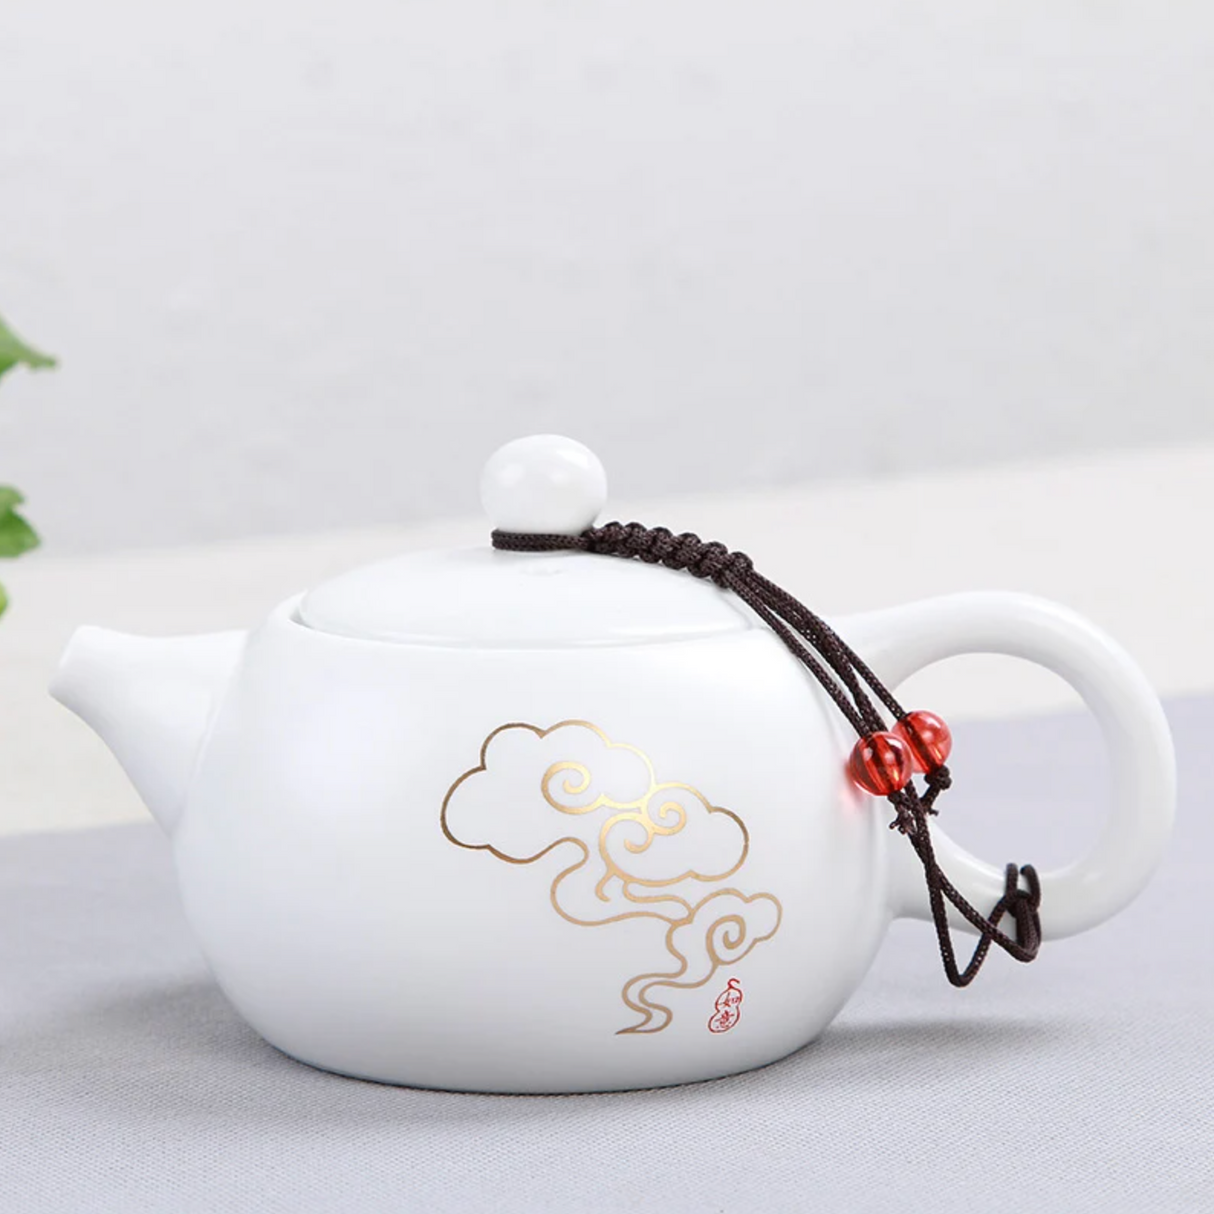 Petite théière japonaise blanche avec dessin